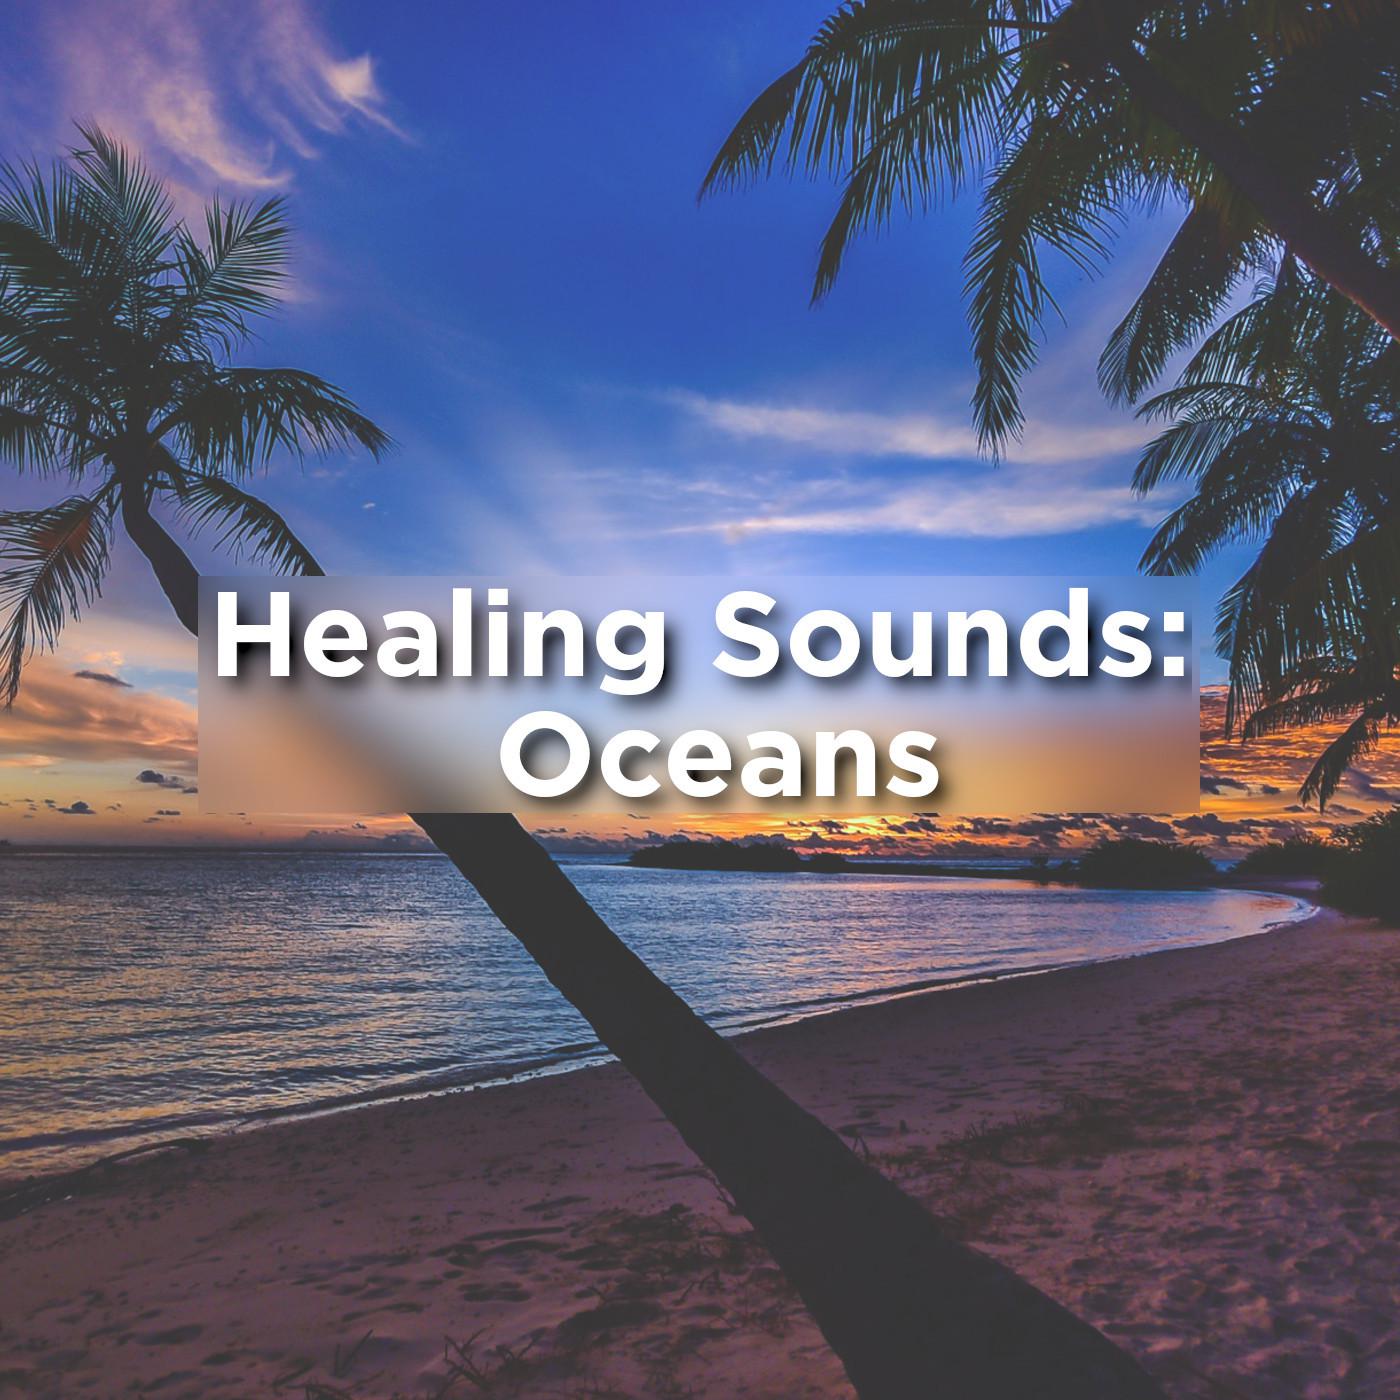 Healing Sounds: Oceans